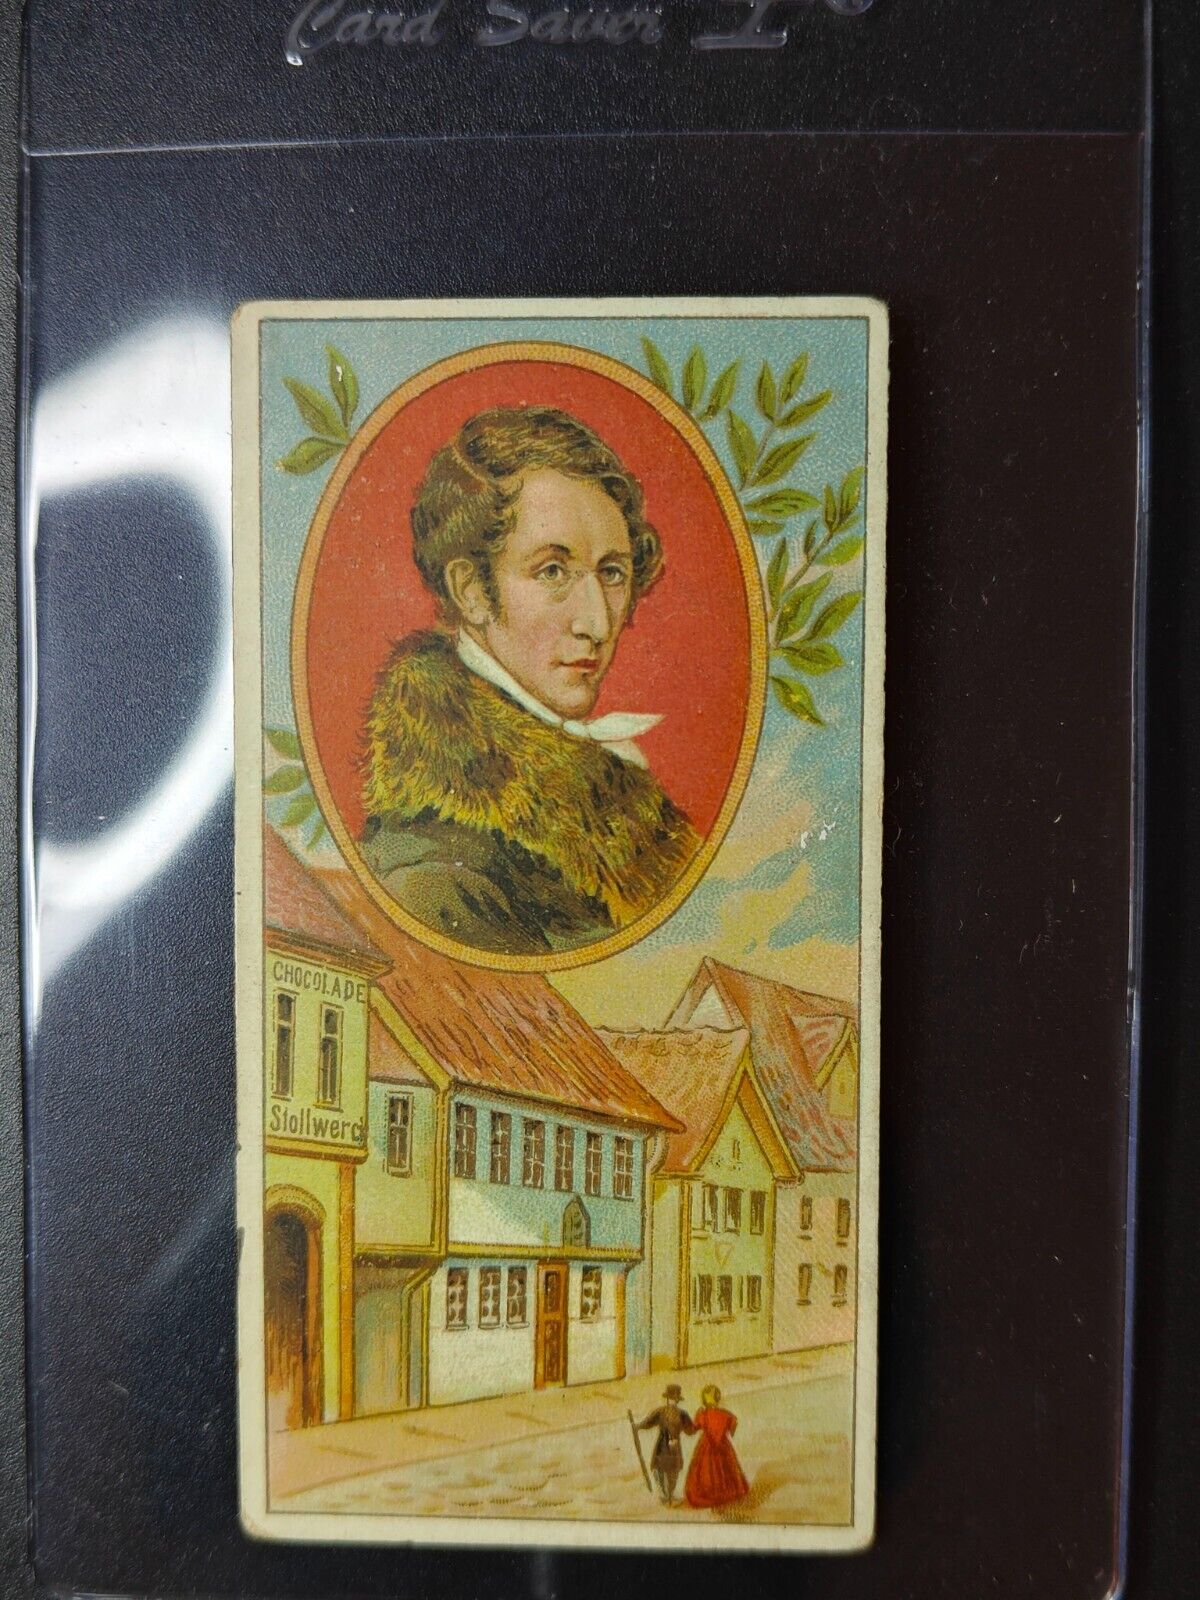 Karl Maria von Weber Stollwerck 1898 German Trade Card Album 2 Series 33